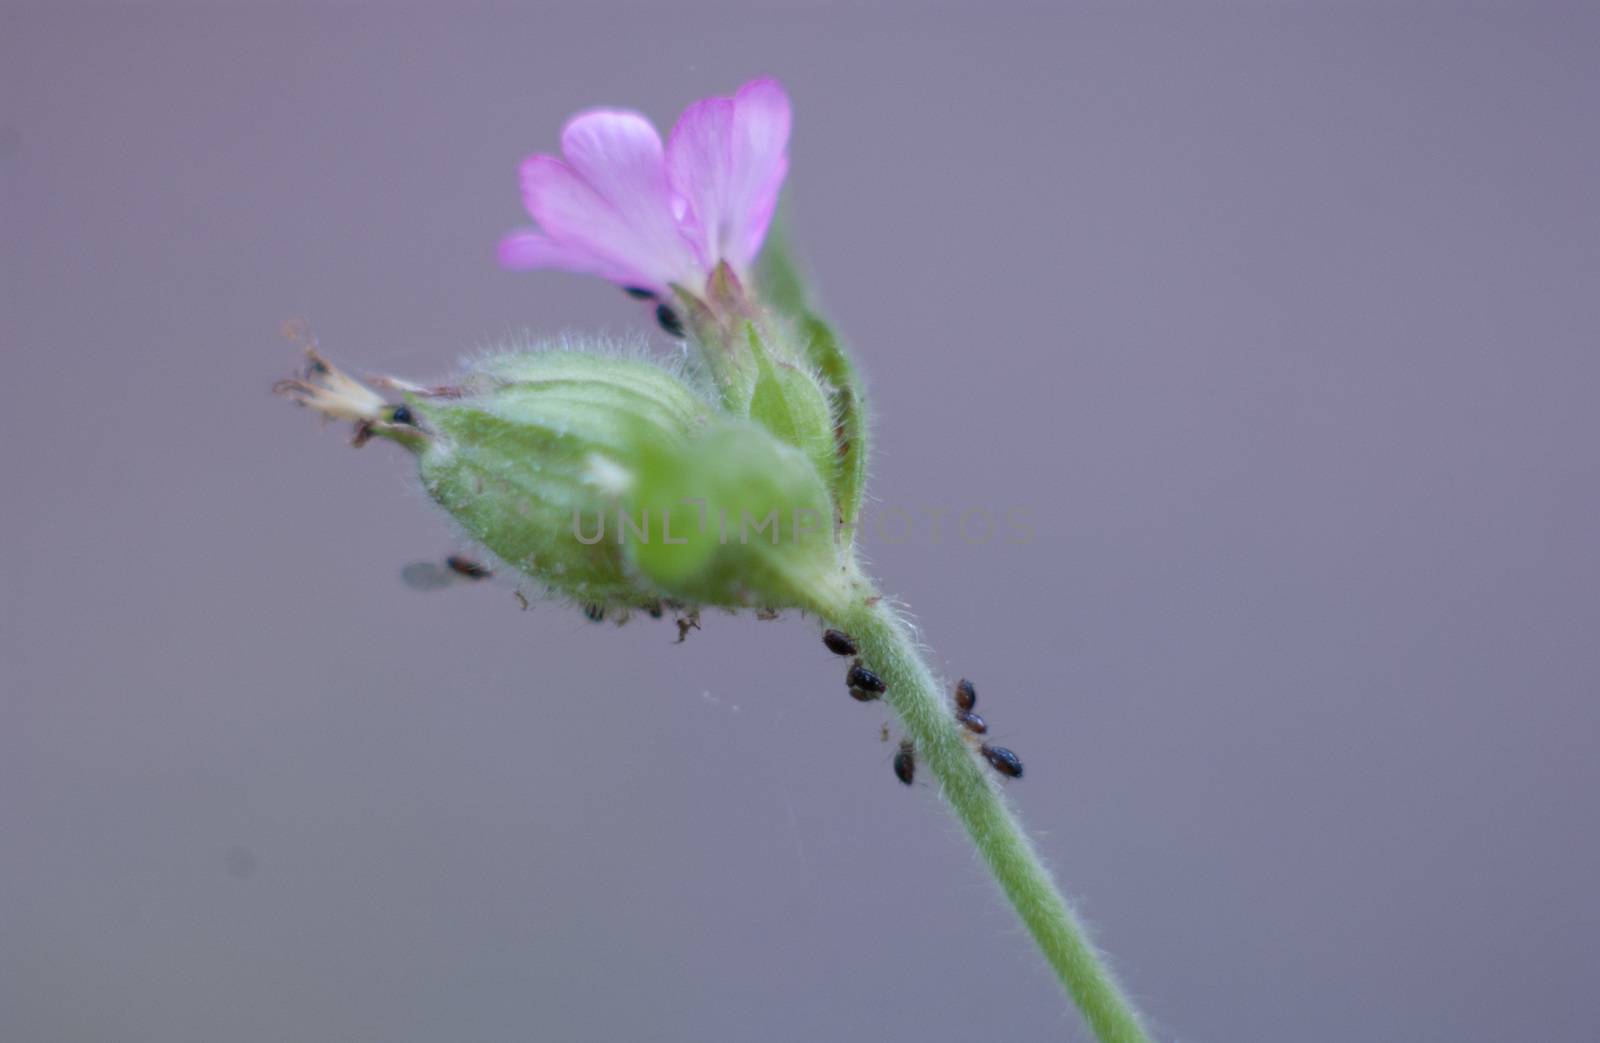 purple Flower craweld by ants